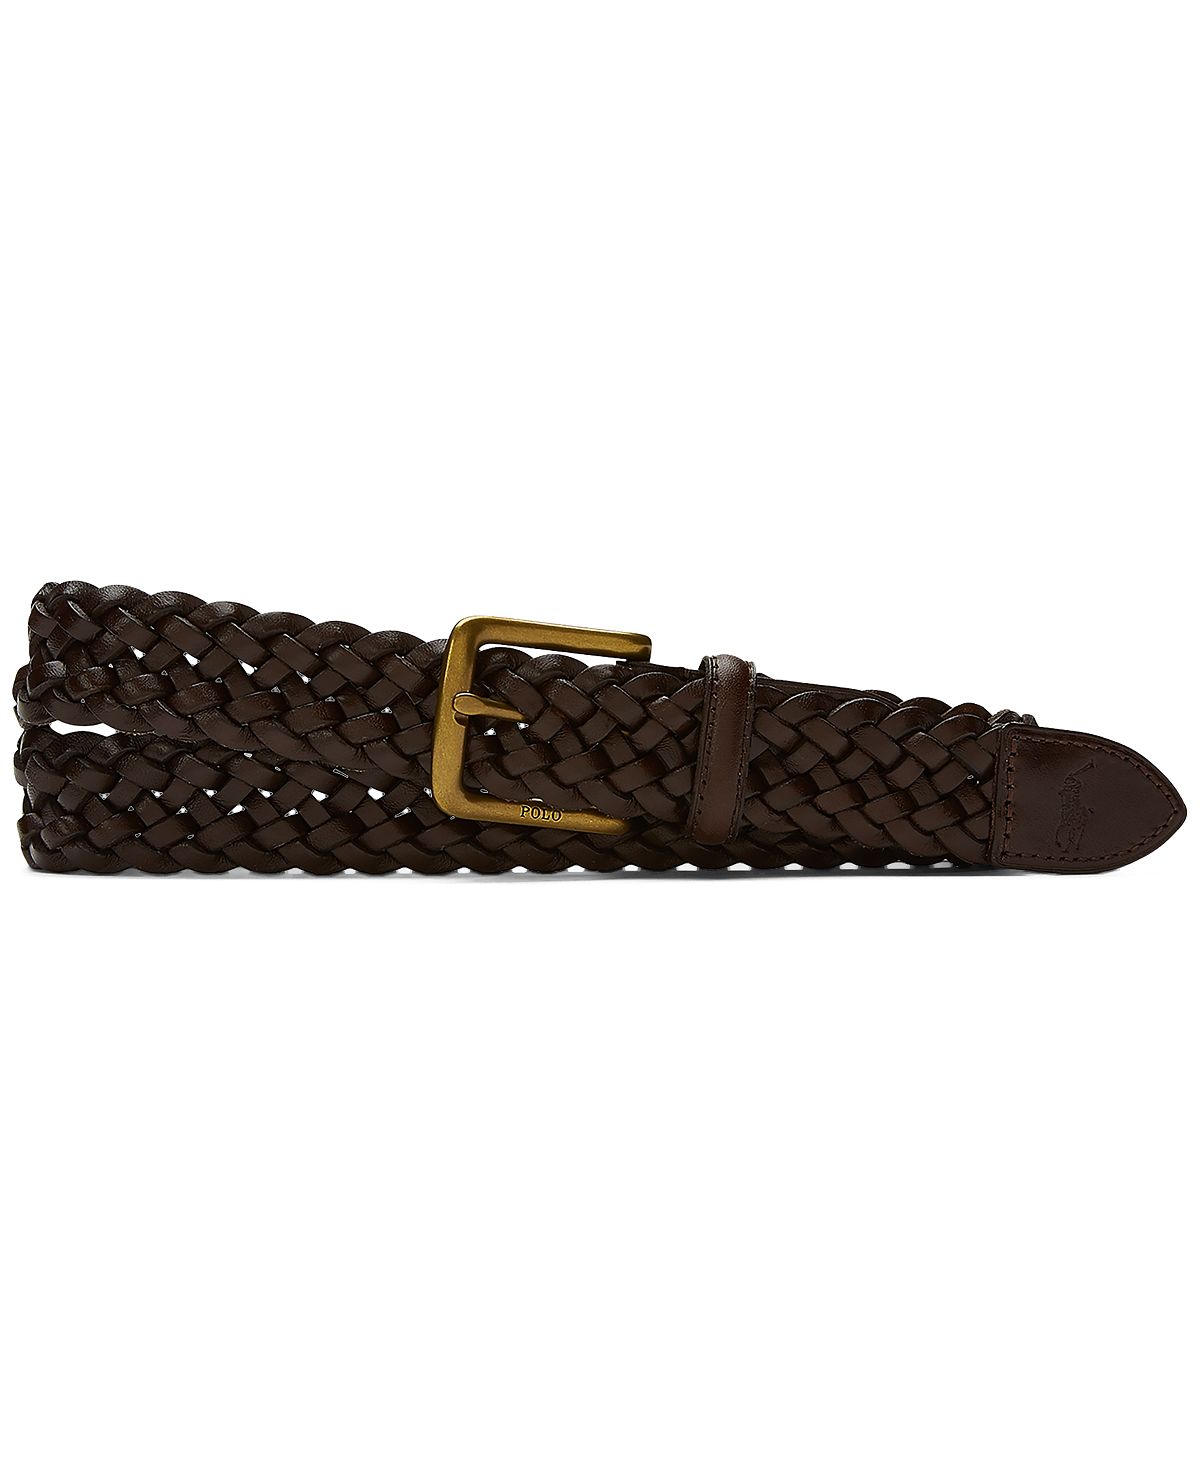 Мужской плетеный кожаный ремень vachetta Polo Ralph Lauren, темно-коричневый